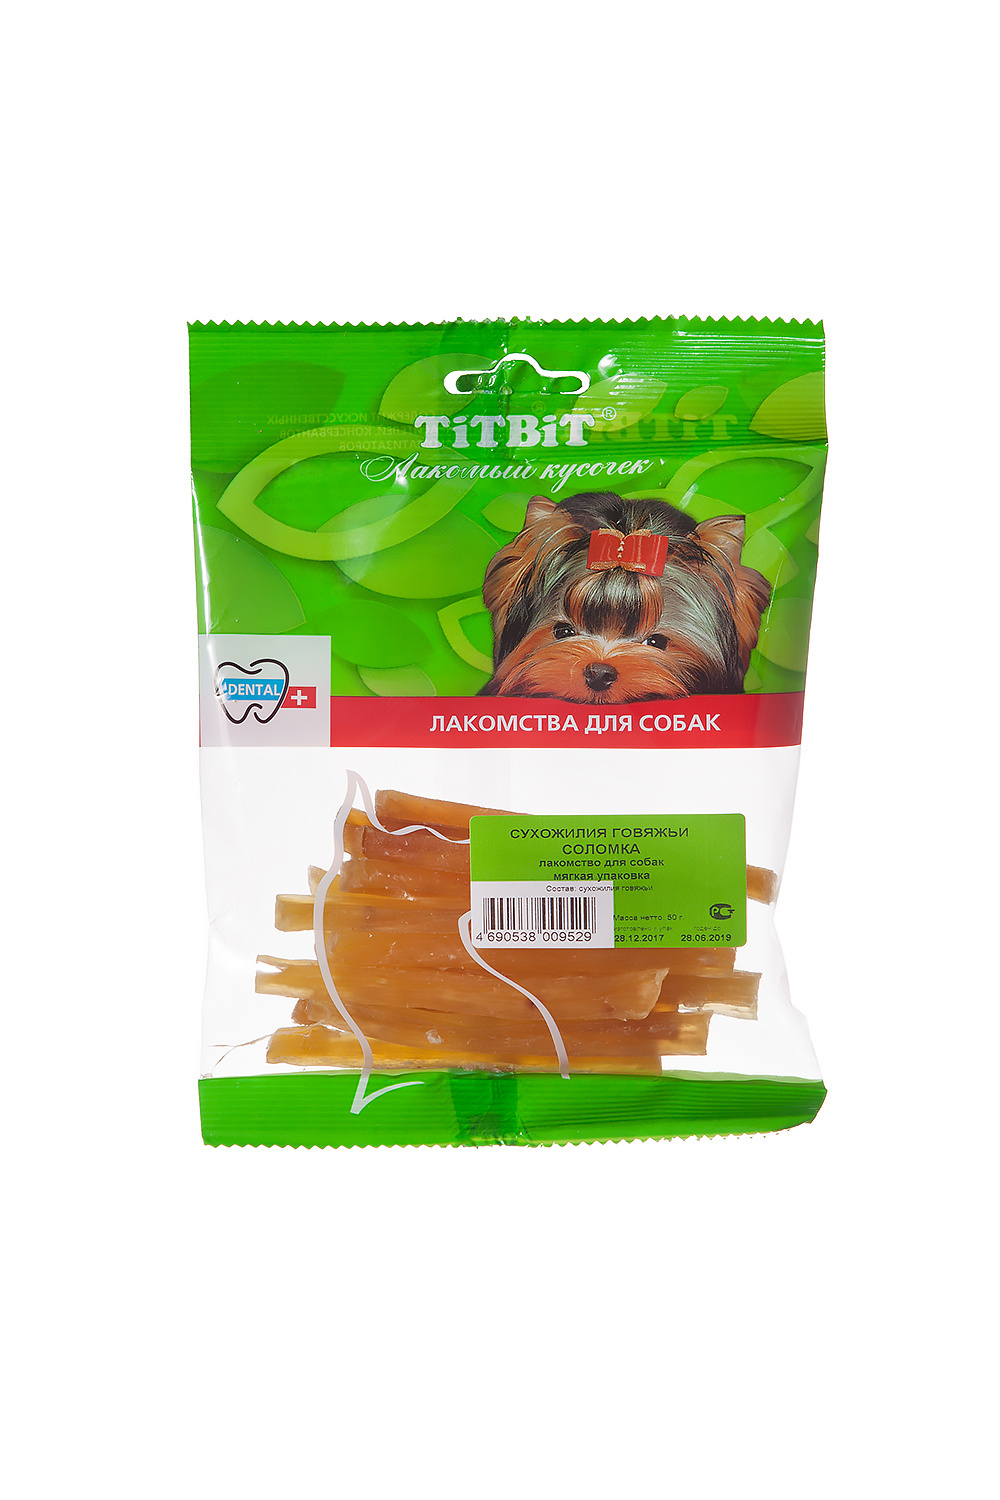 TiTBiT TiTBiT сухожилия говяжьи (соломка) - мягкая упаковка (50 г)